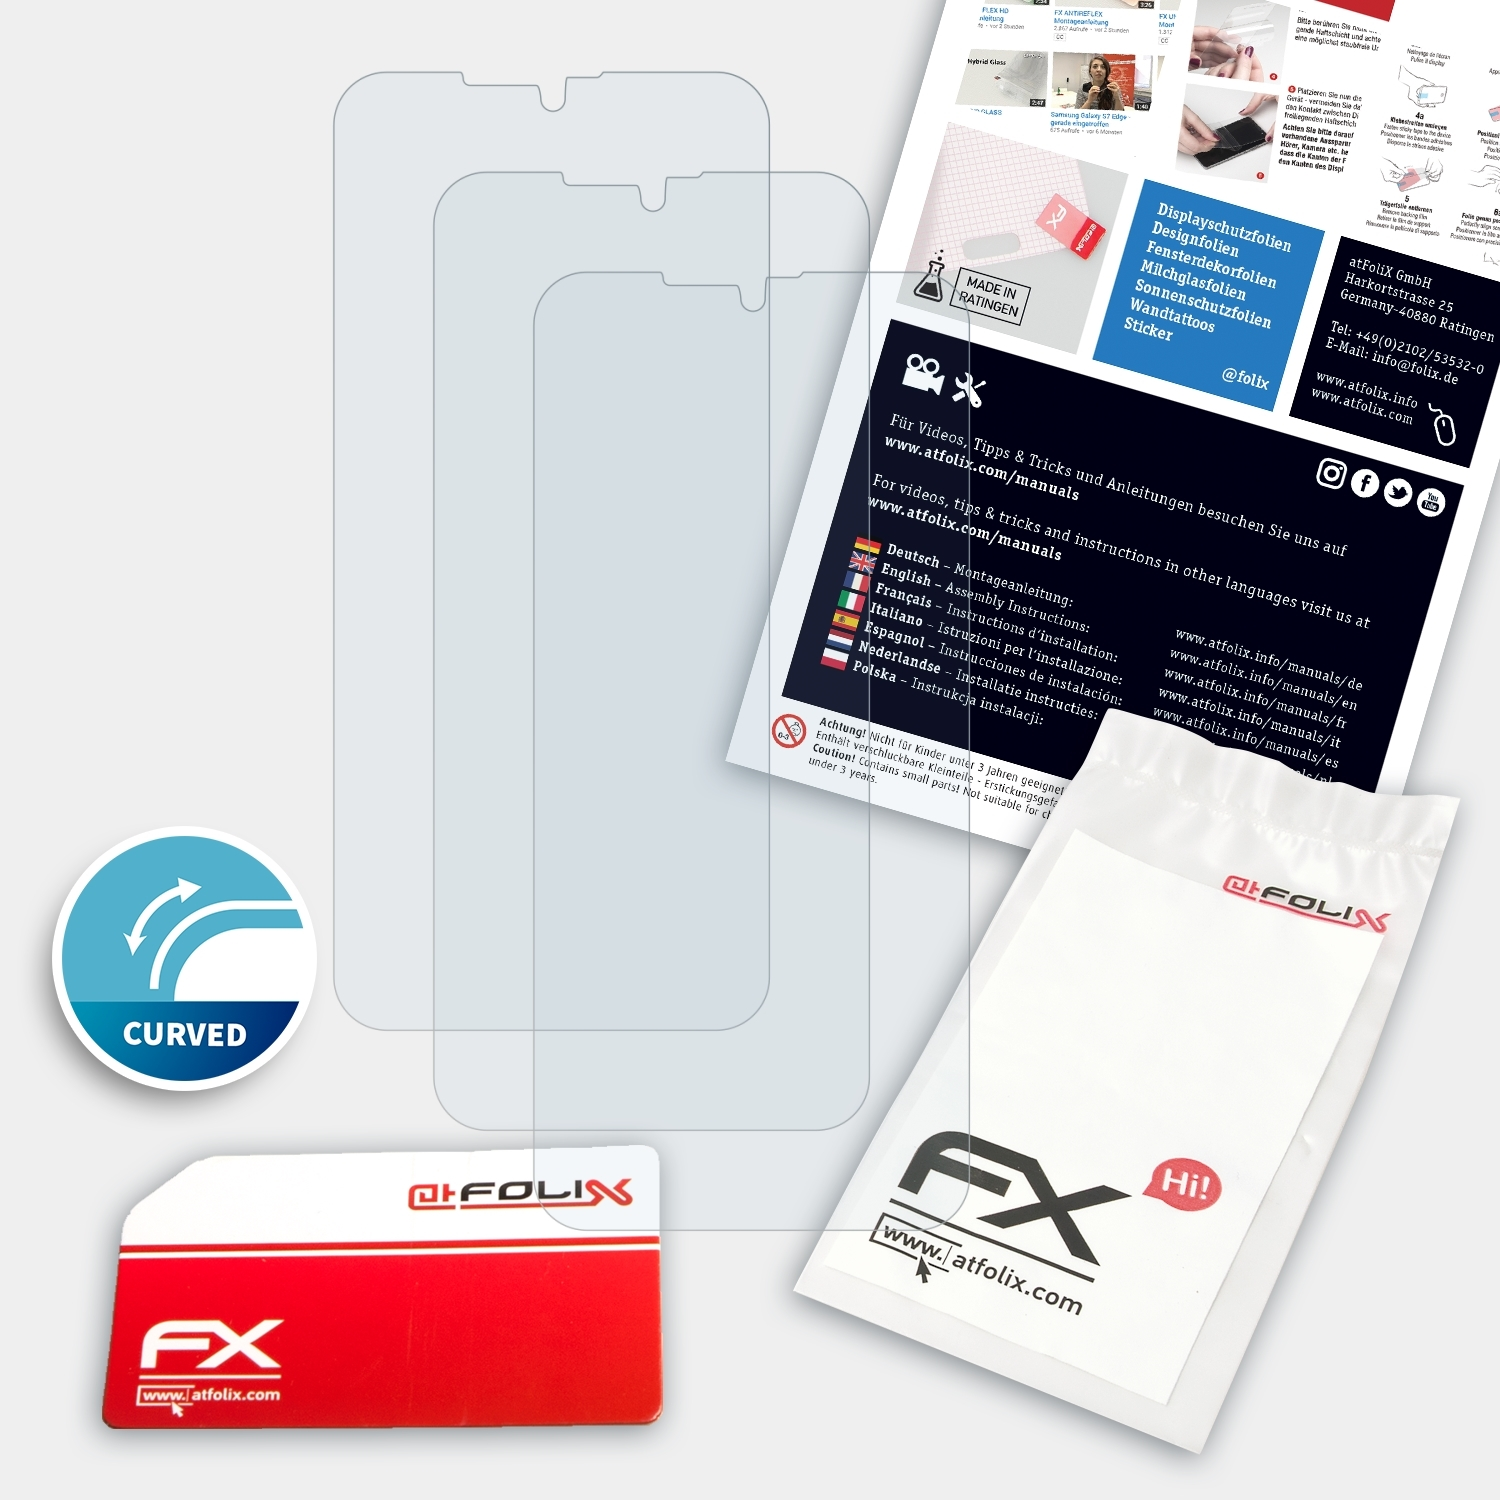 GS190) 3x Gigaset ATFOLIX FX-ActiFleX Displayschutz(für